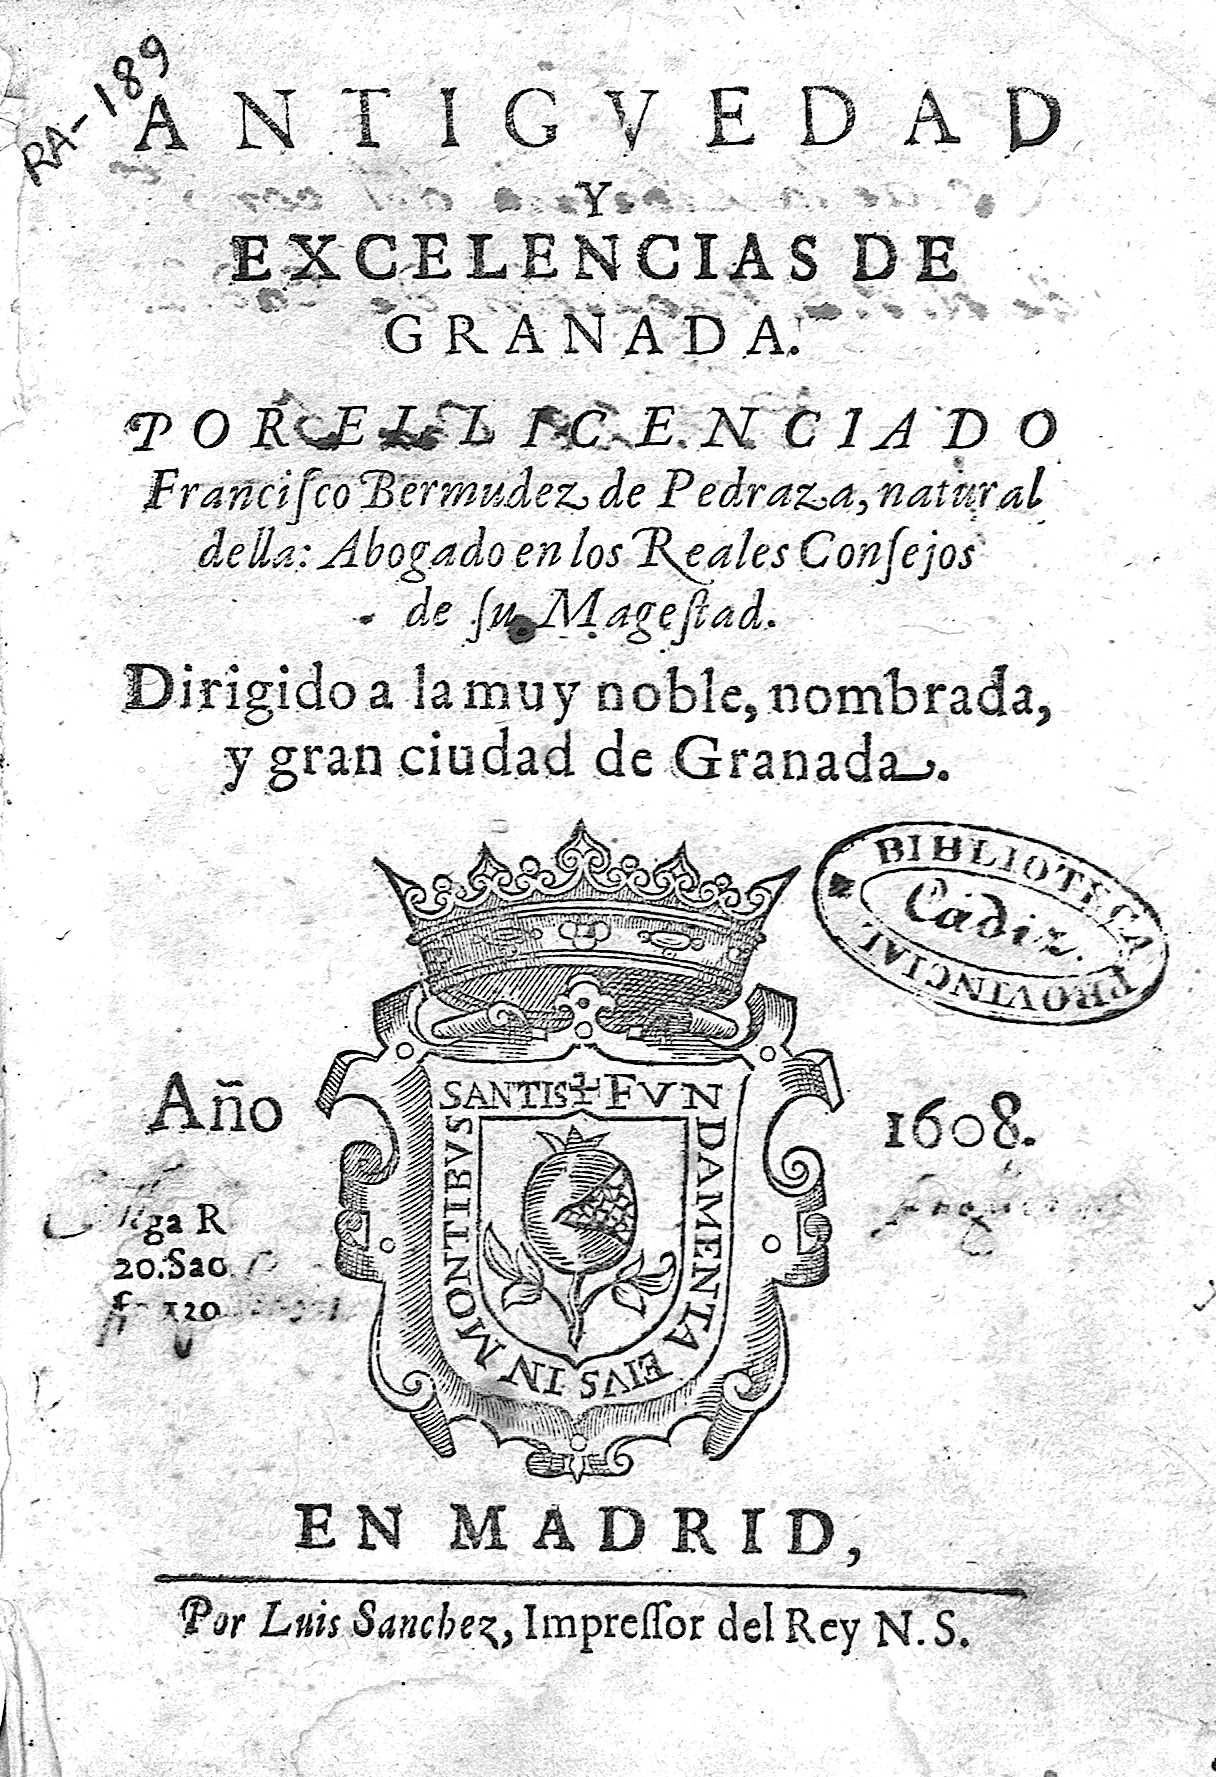 Antiguedad y Excelencias de Granada